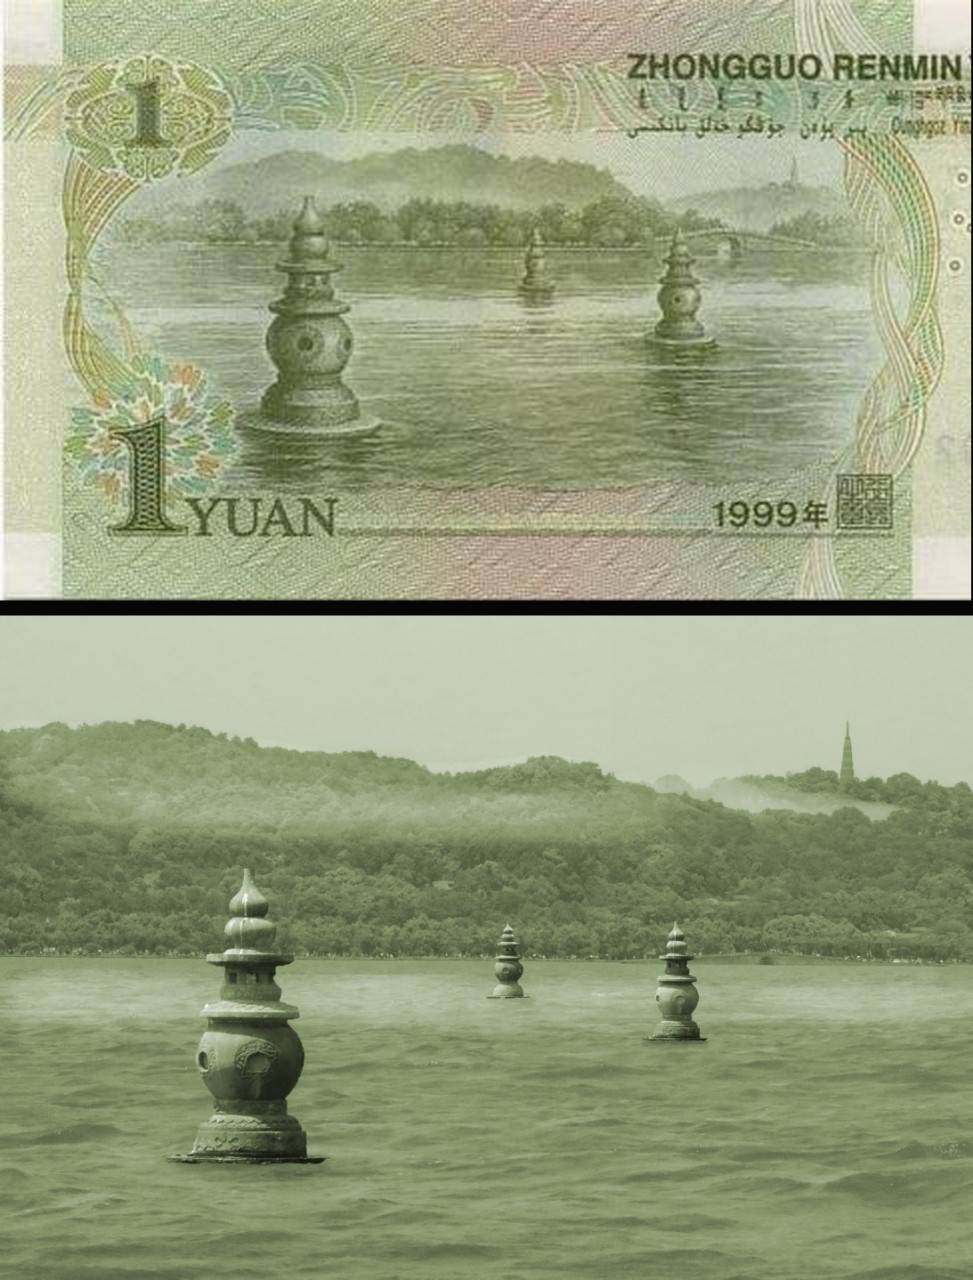 三潭印月只能拍到一元钱纸币背面风景的柱子 去西湖前,做了攻略,路上